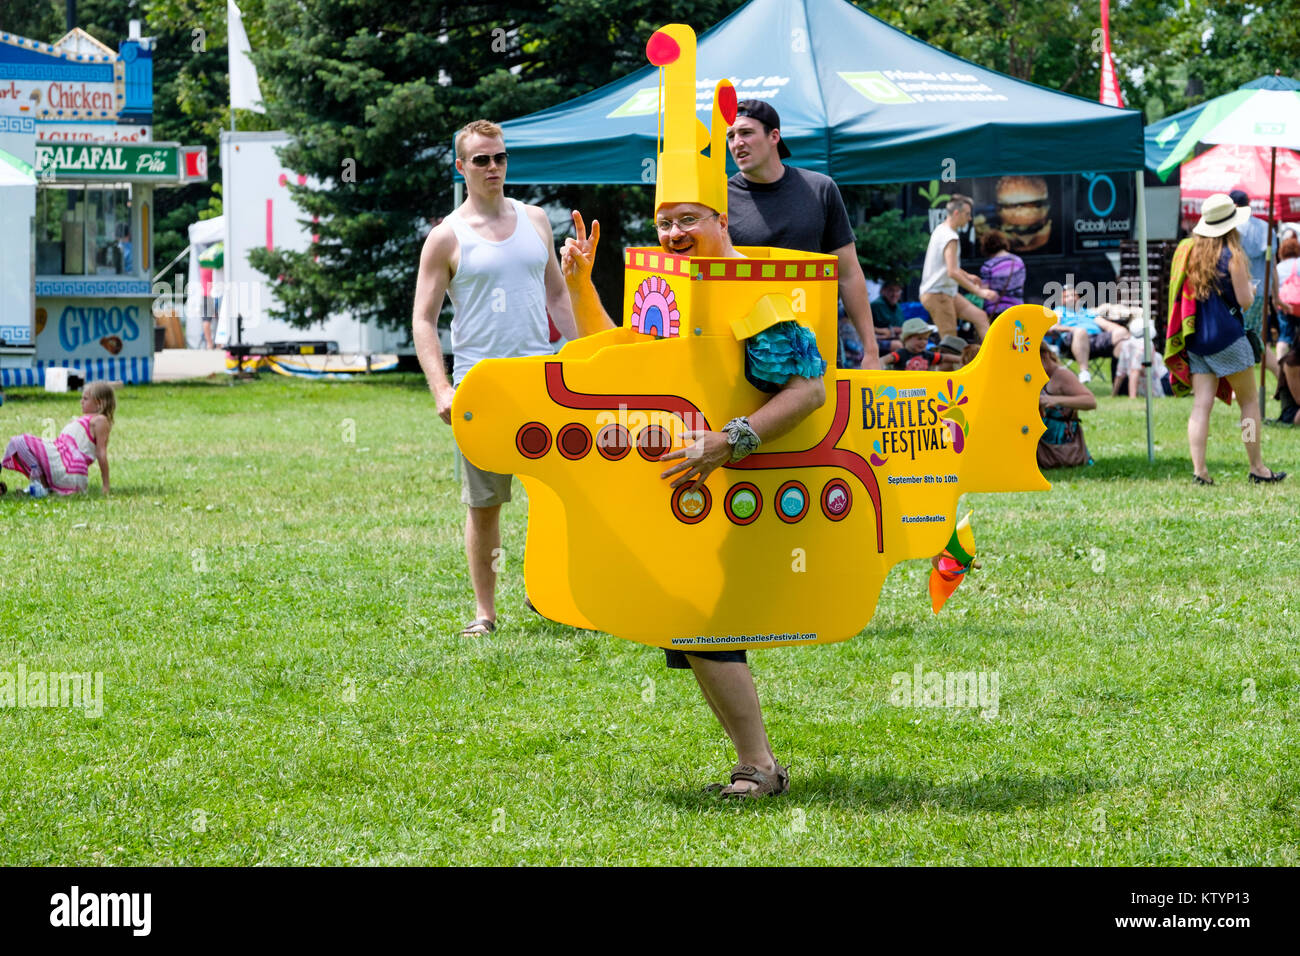 Homme habillé avec un costume de sous-marin jaune, prop, la promotion de la London Beatles Festival, un festival d'été tenue à London, Ontario, Canada. Banque D'Images